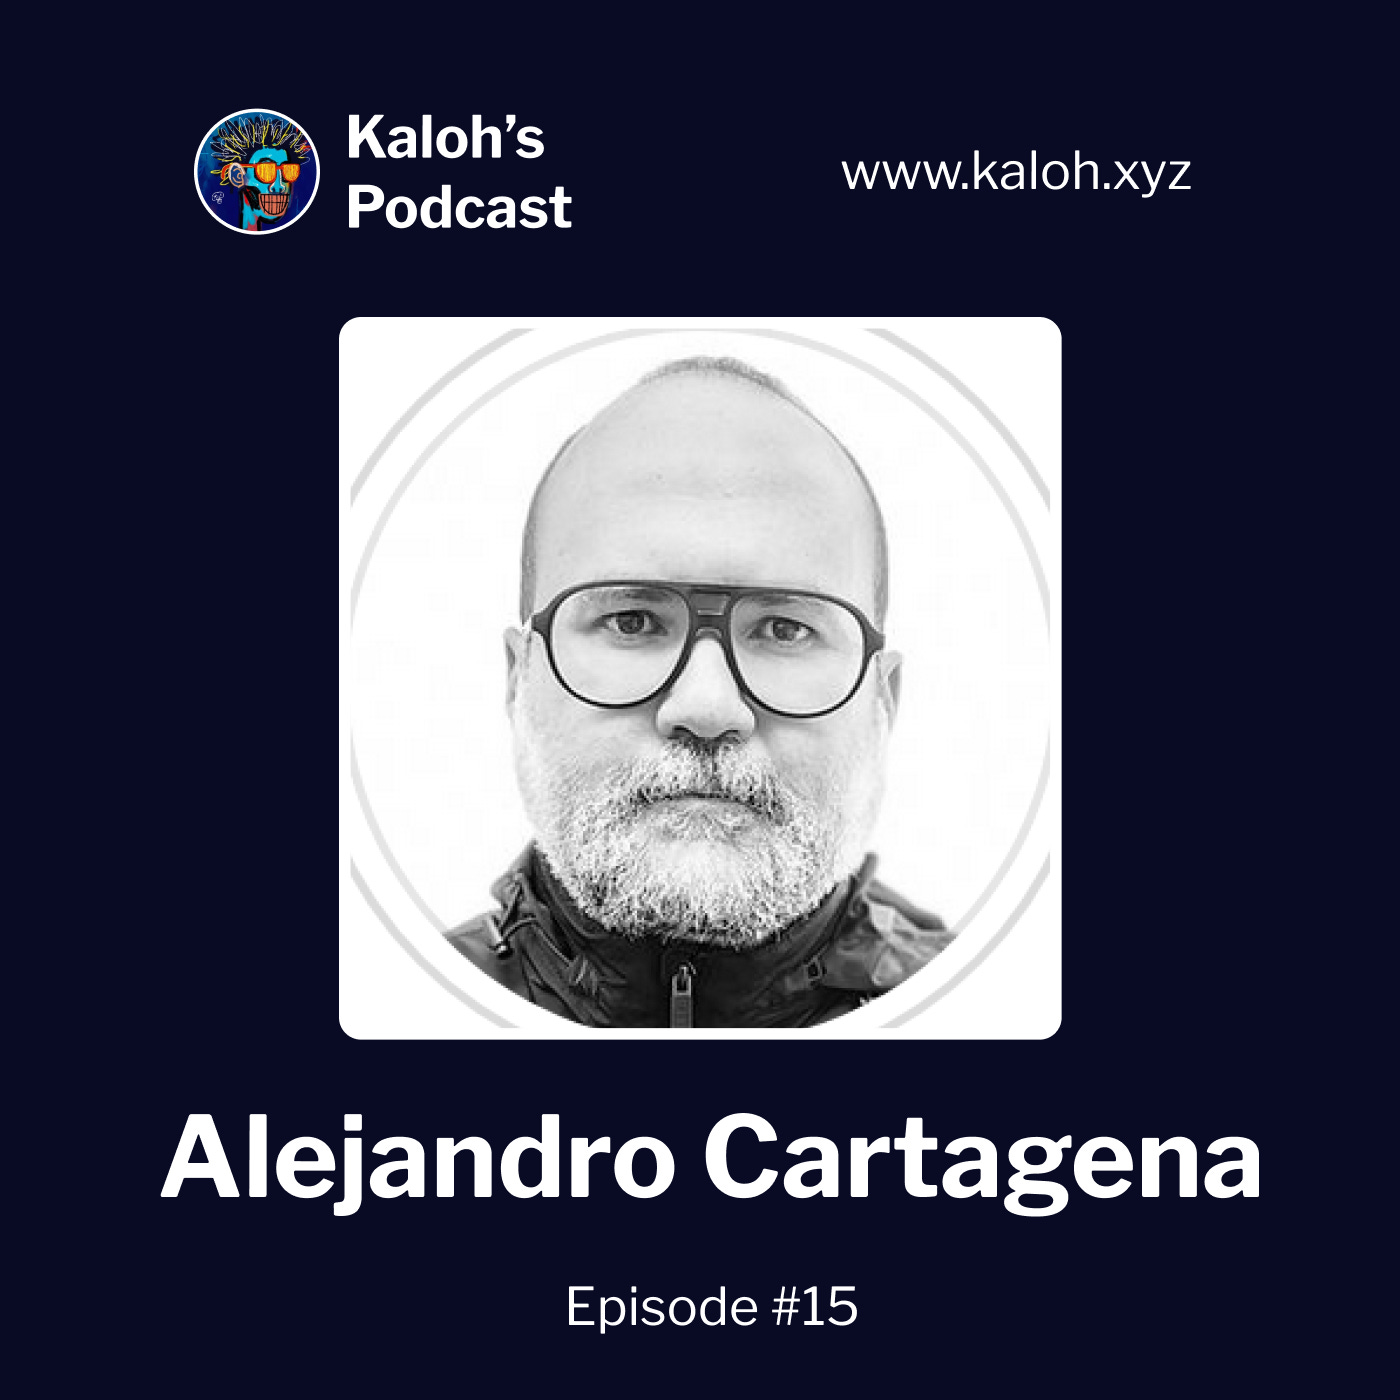 Kaloh's Podcast: Alejandro Cartagena